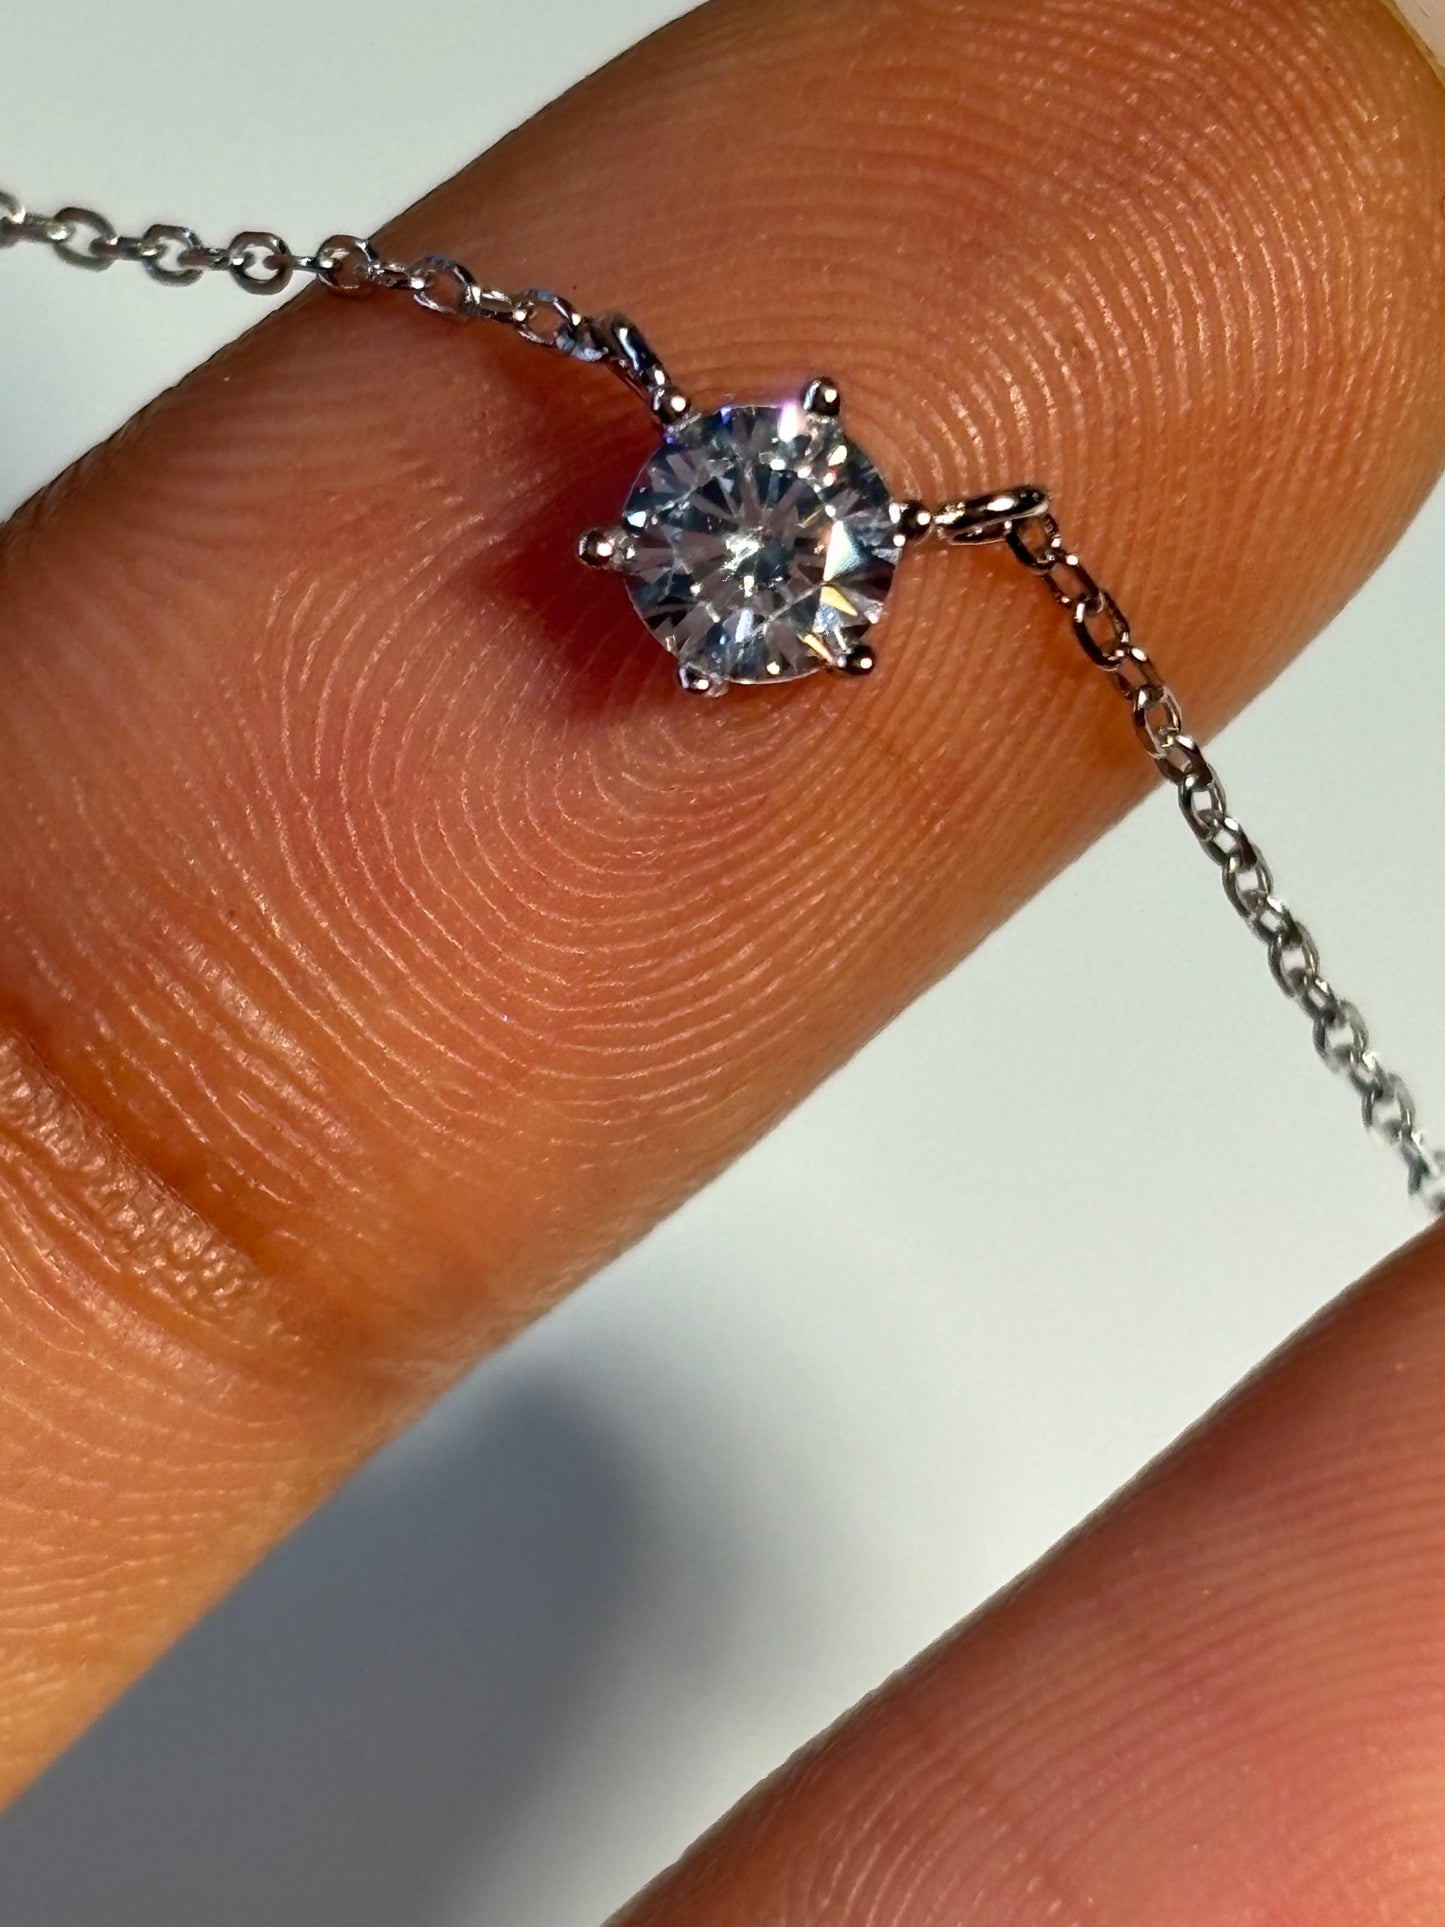 Layla - Sterling Silver Diamond Necklace